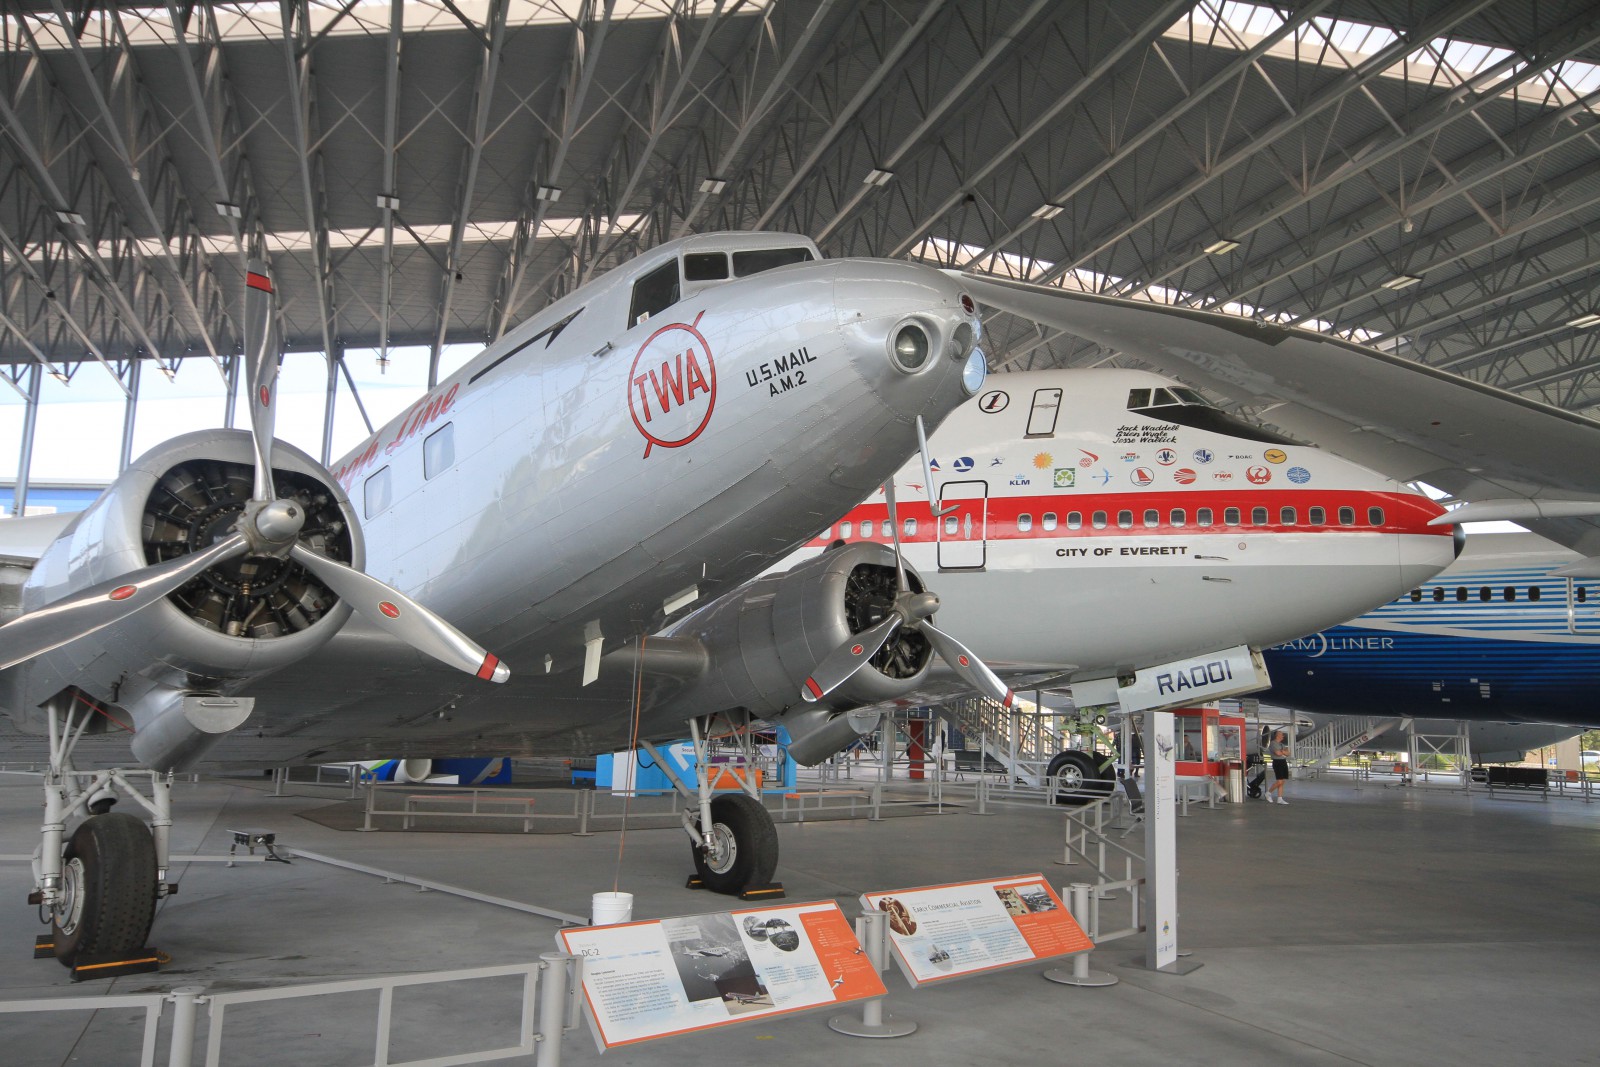 Museum of flight